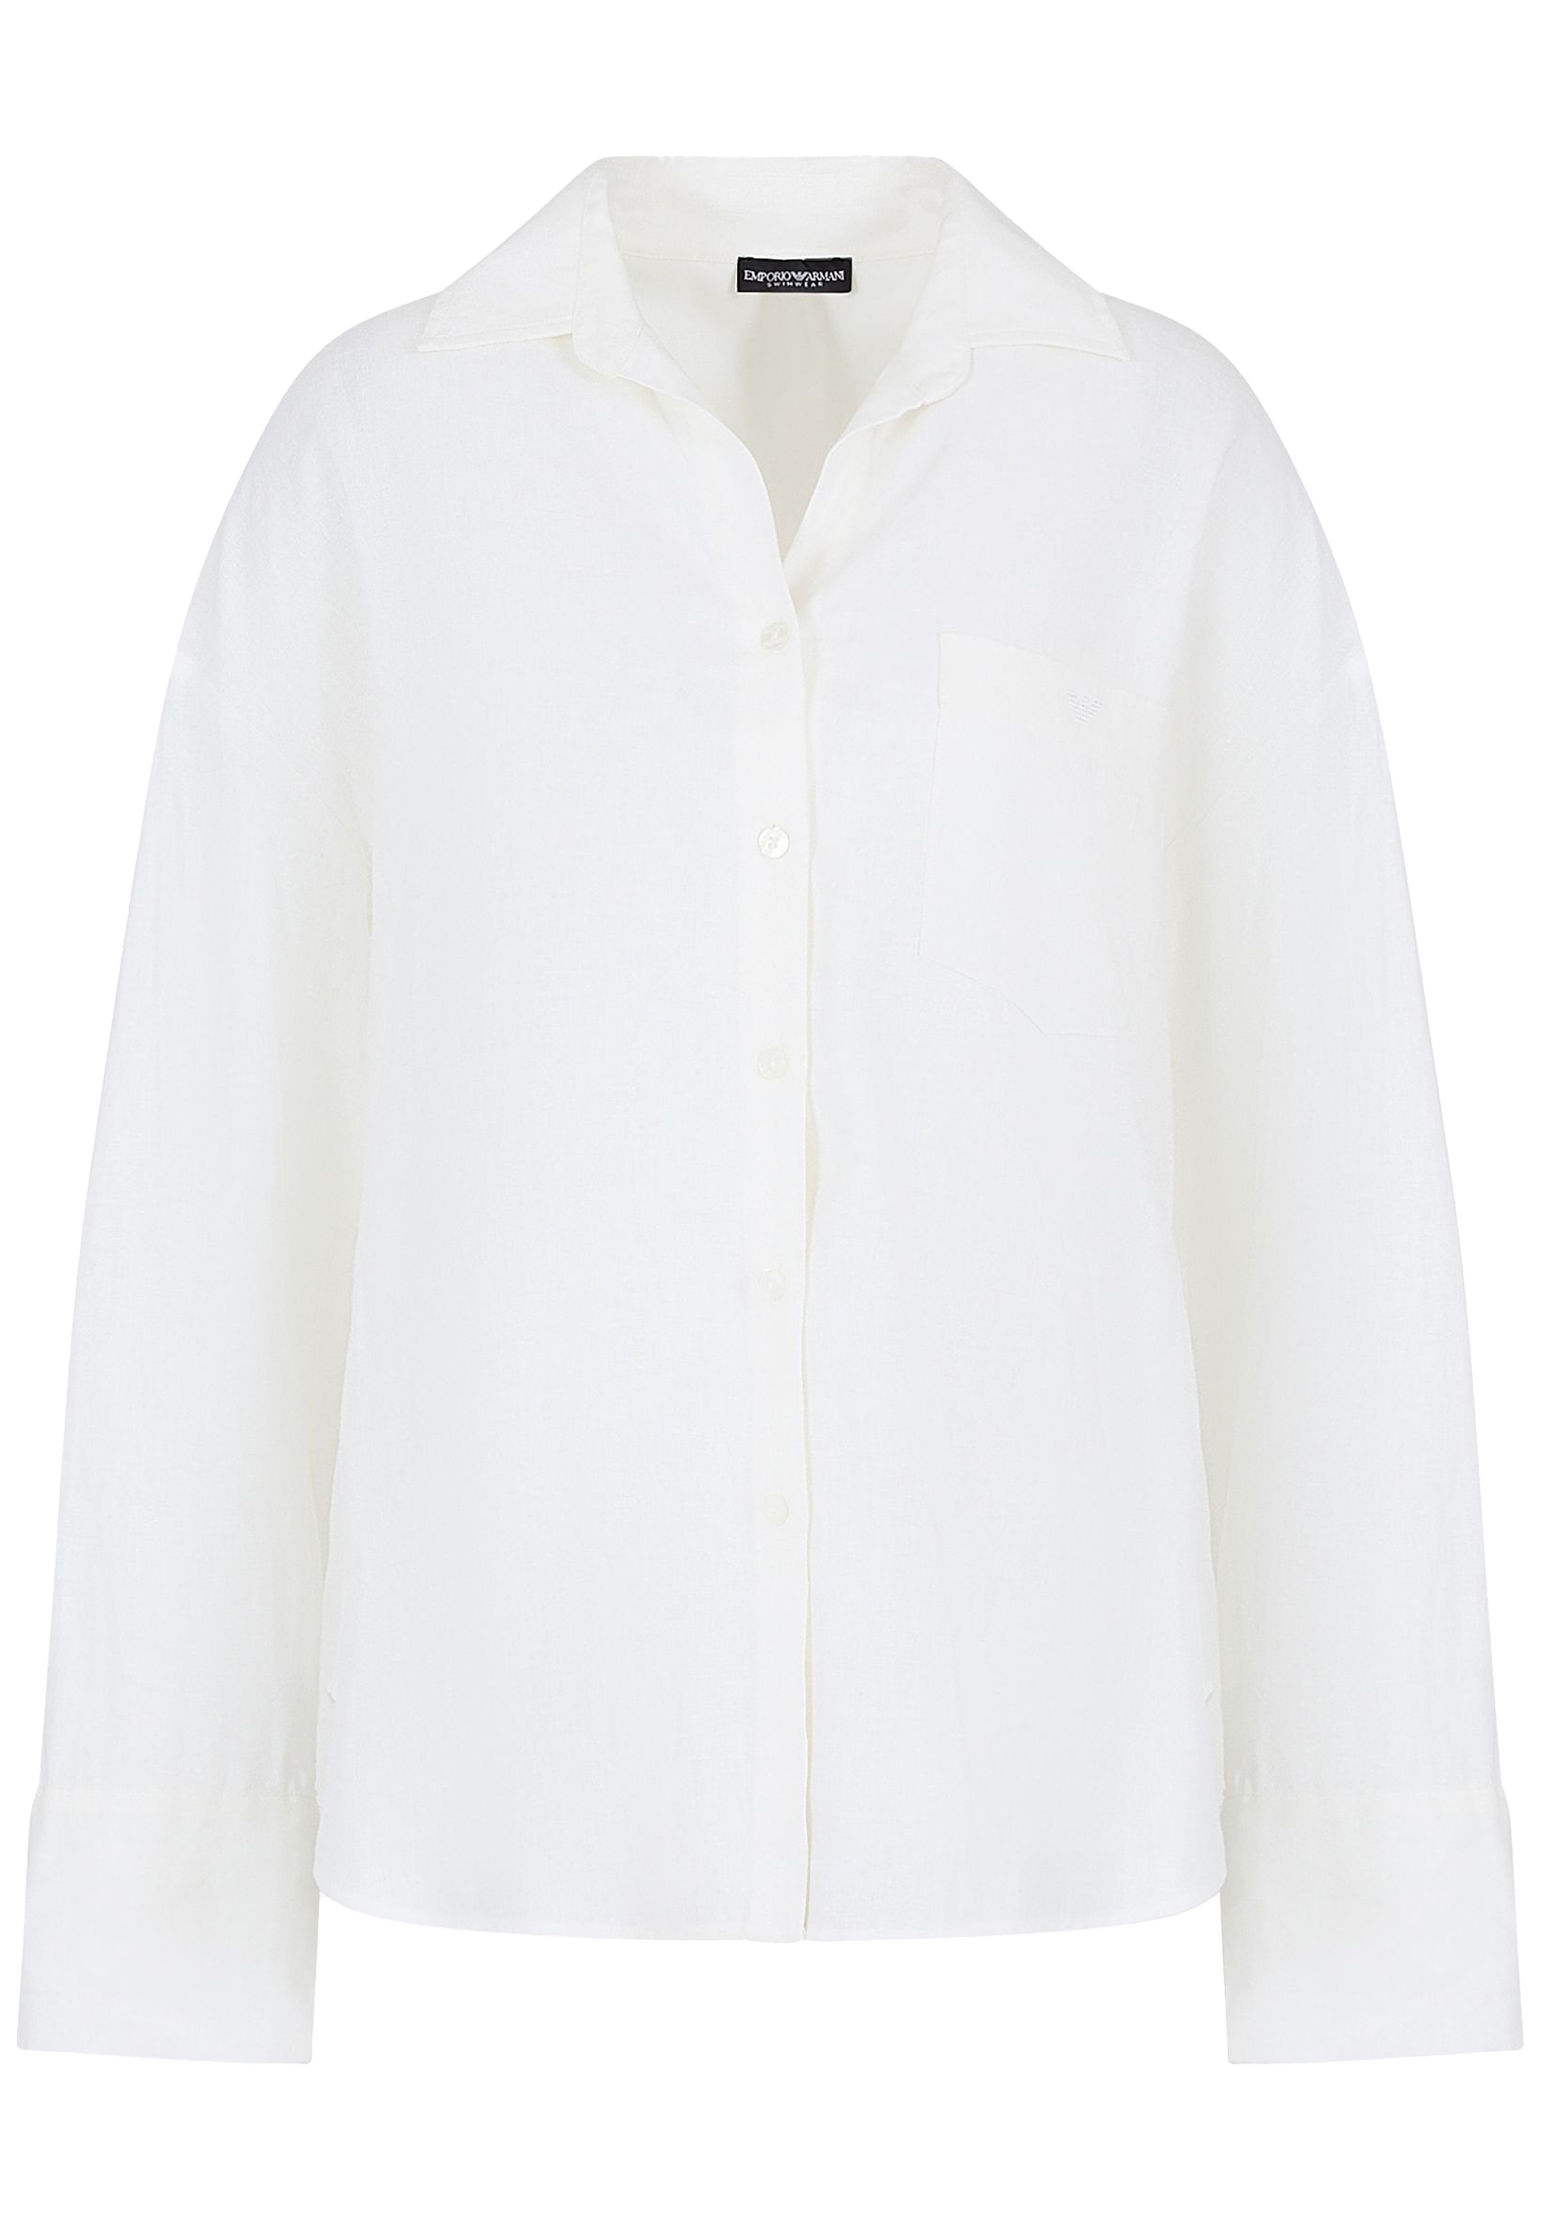 Рубашка EMPORIO ARMANI Белый, размер S/M